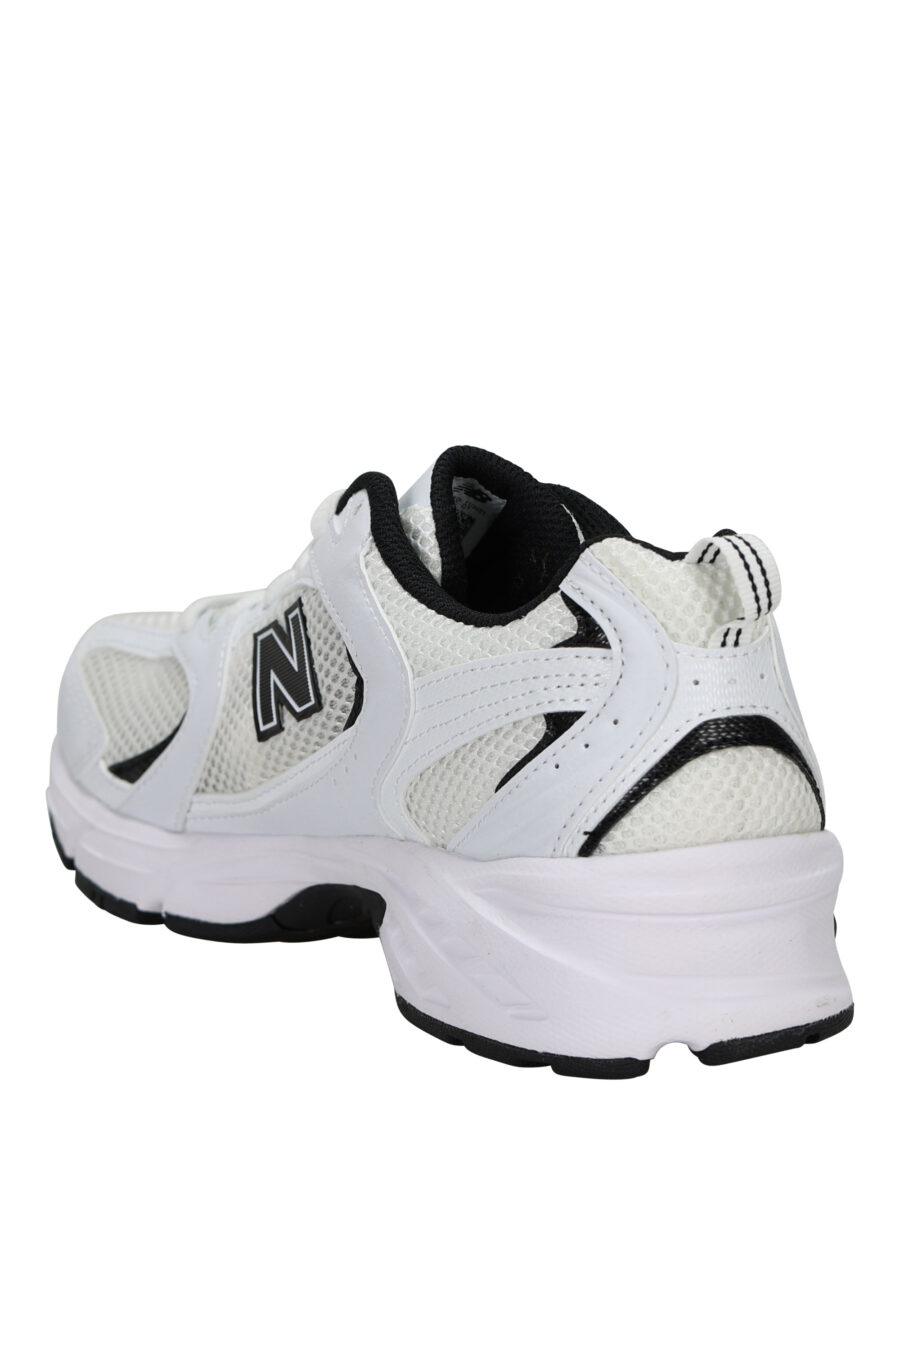 Zapatillas blancas con negro "530" con logo "N" negro - 196071167954 3